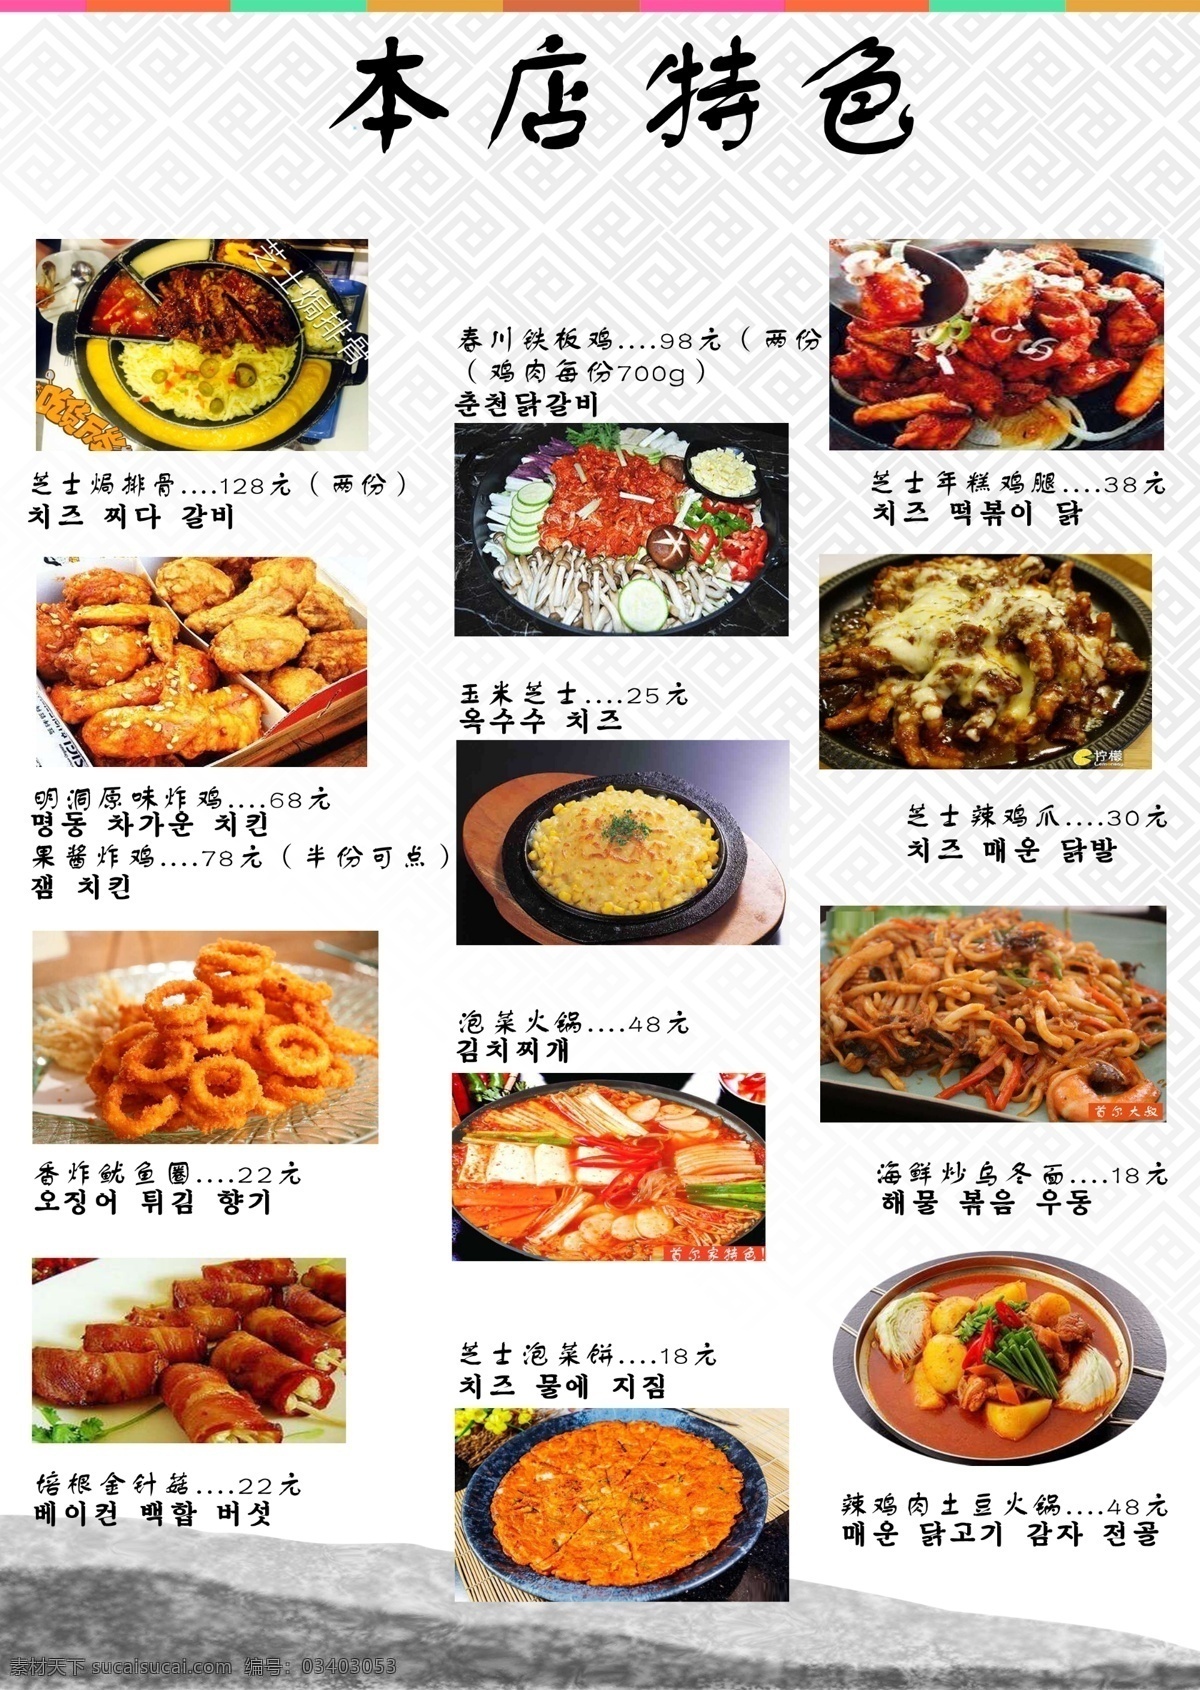 特色食品 小韩国 韩国 韩国风 特色 食品 菜谱 名单 菜 韩语 菜名 饮料 菜单菜谱 白色